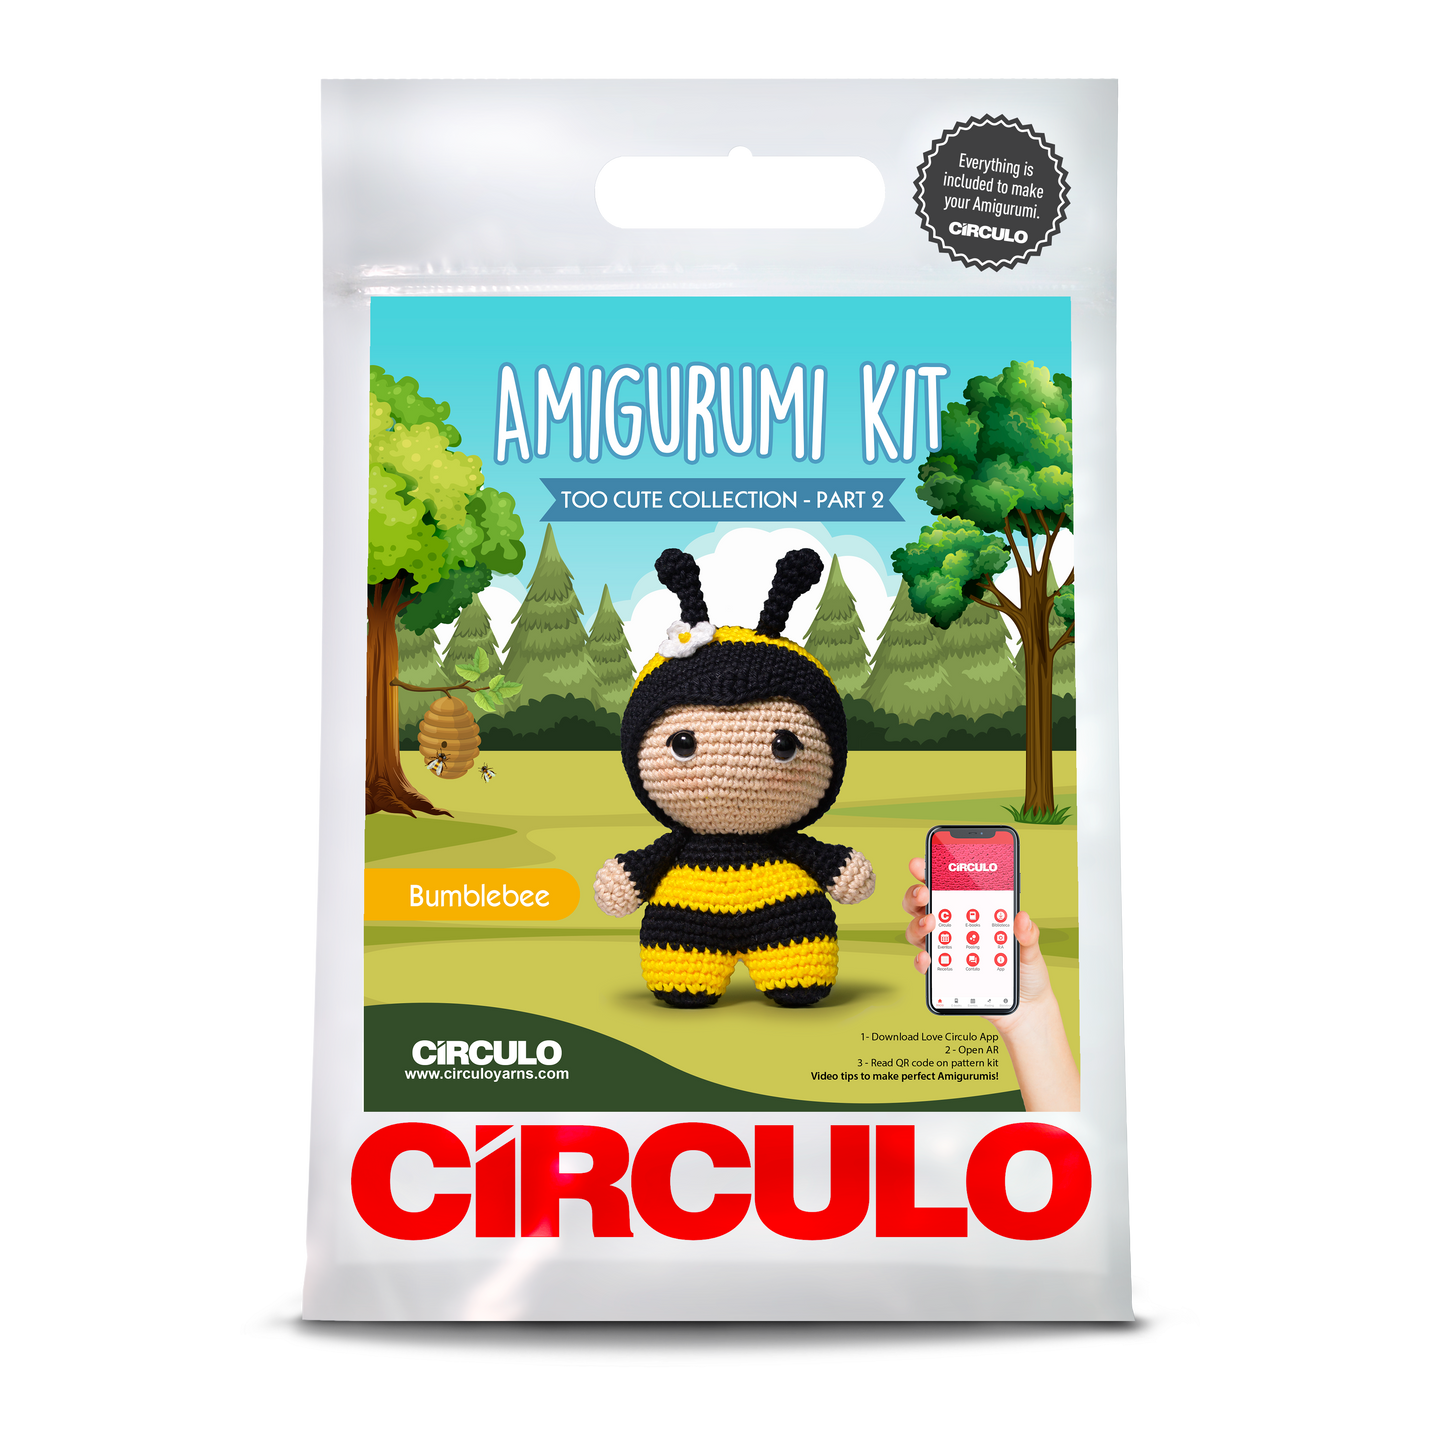 Too Cute 2 Bumblebee - Circulo Amigurumi Kit